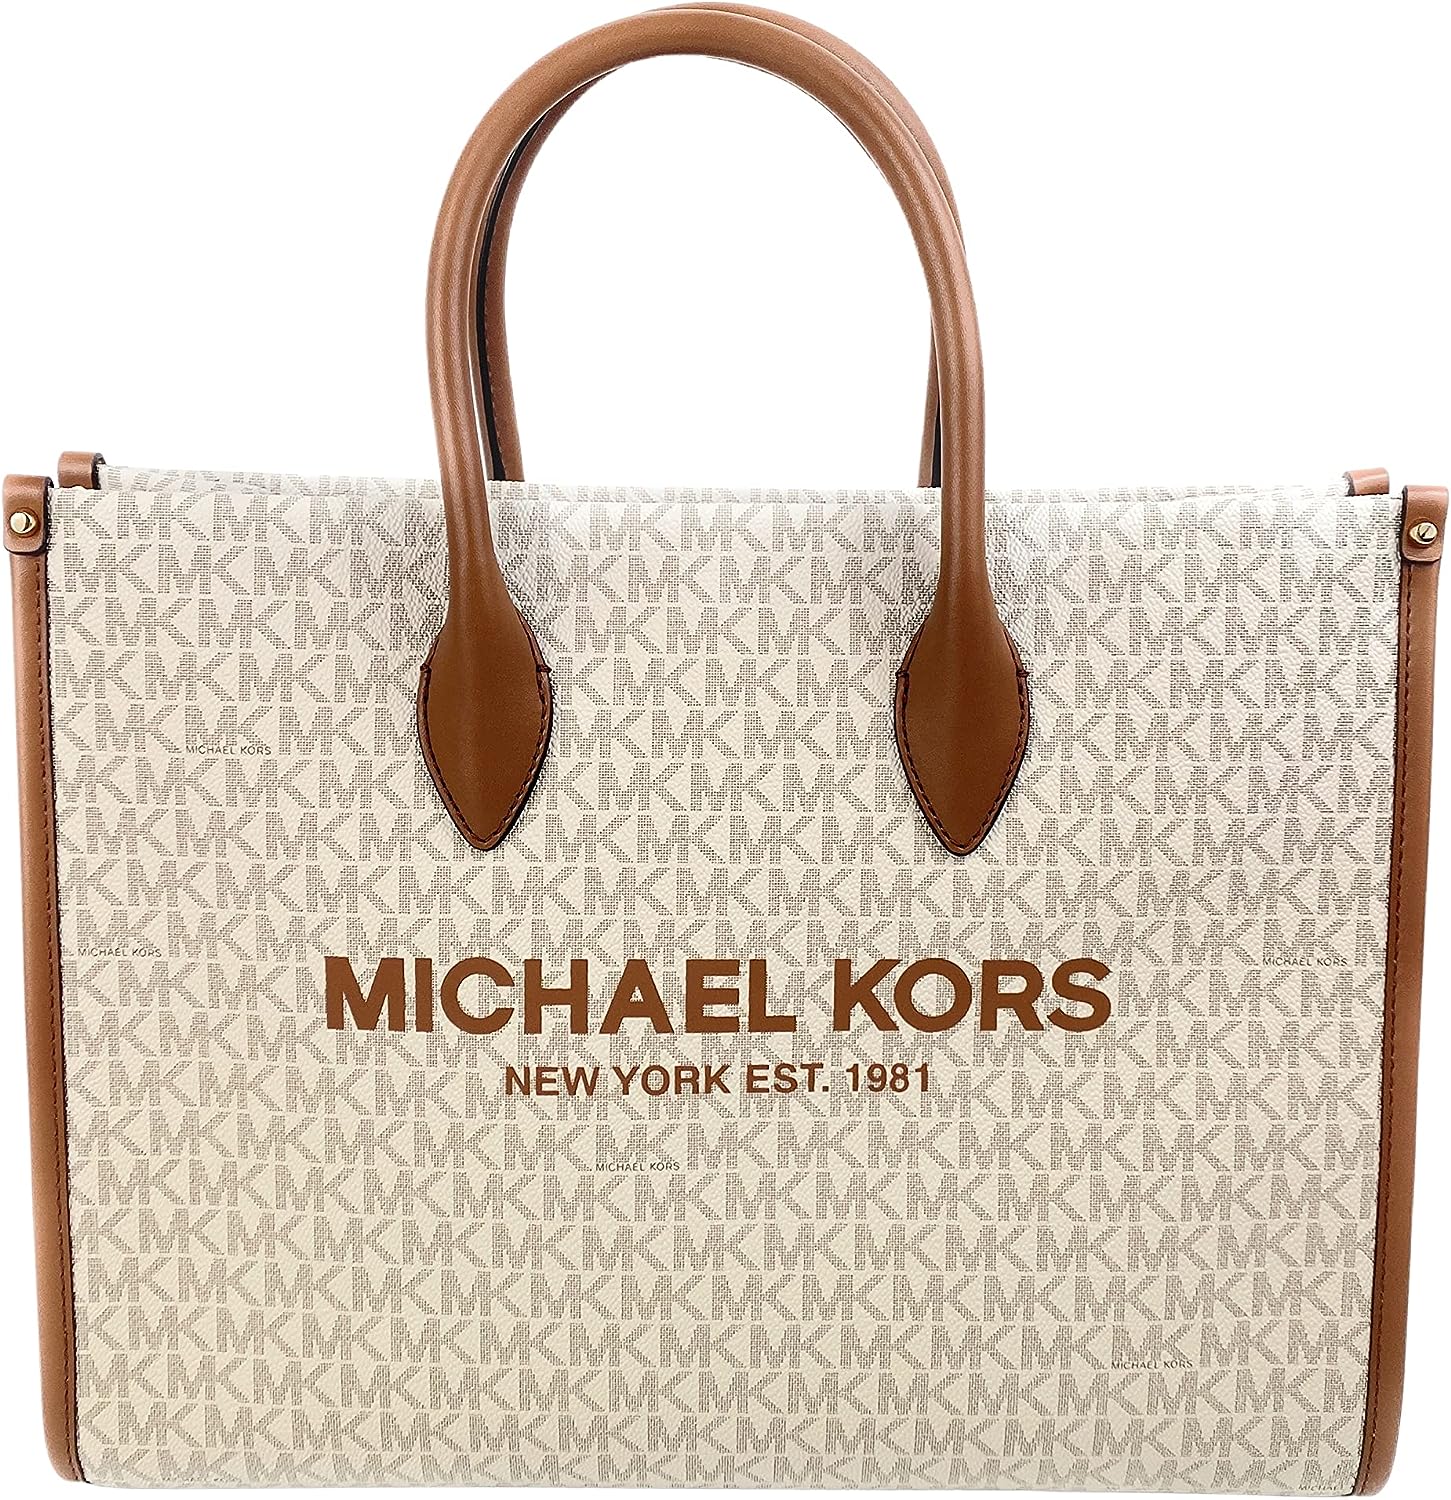 Michael Kors wholesale handbag stock (MOQ 10pcs.)